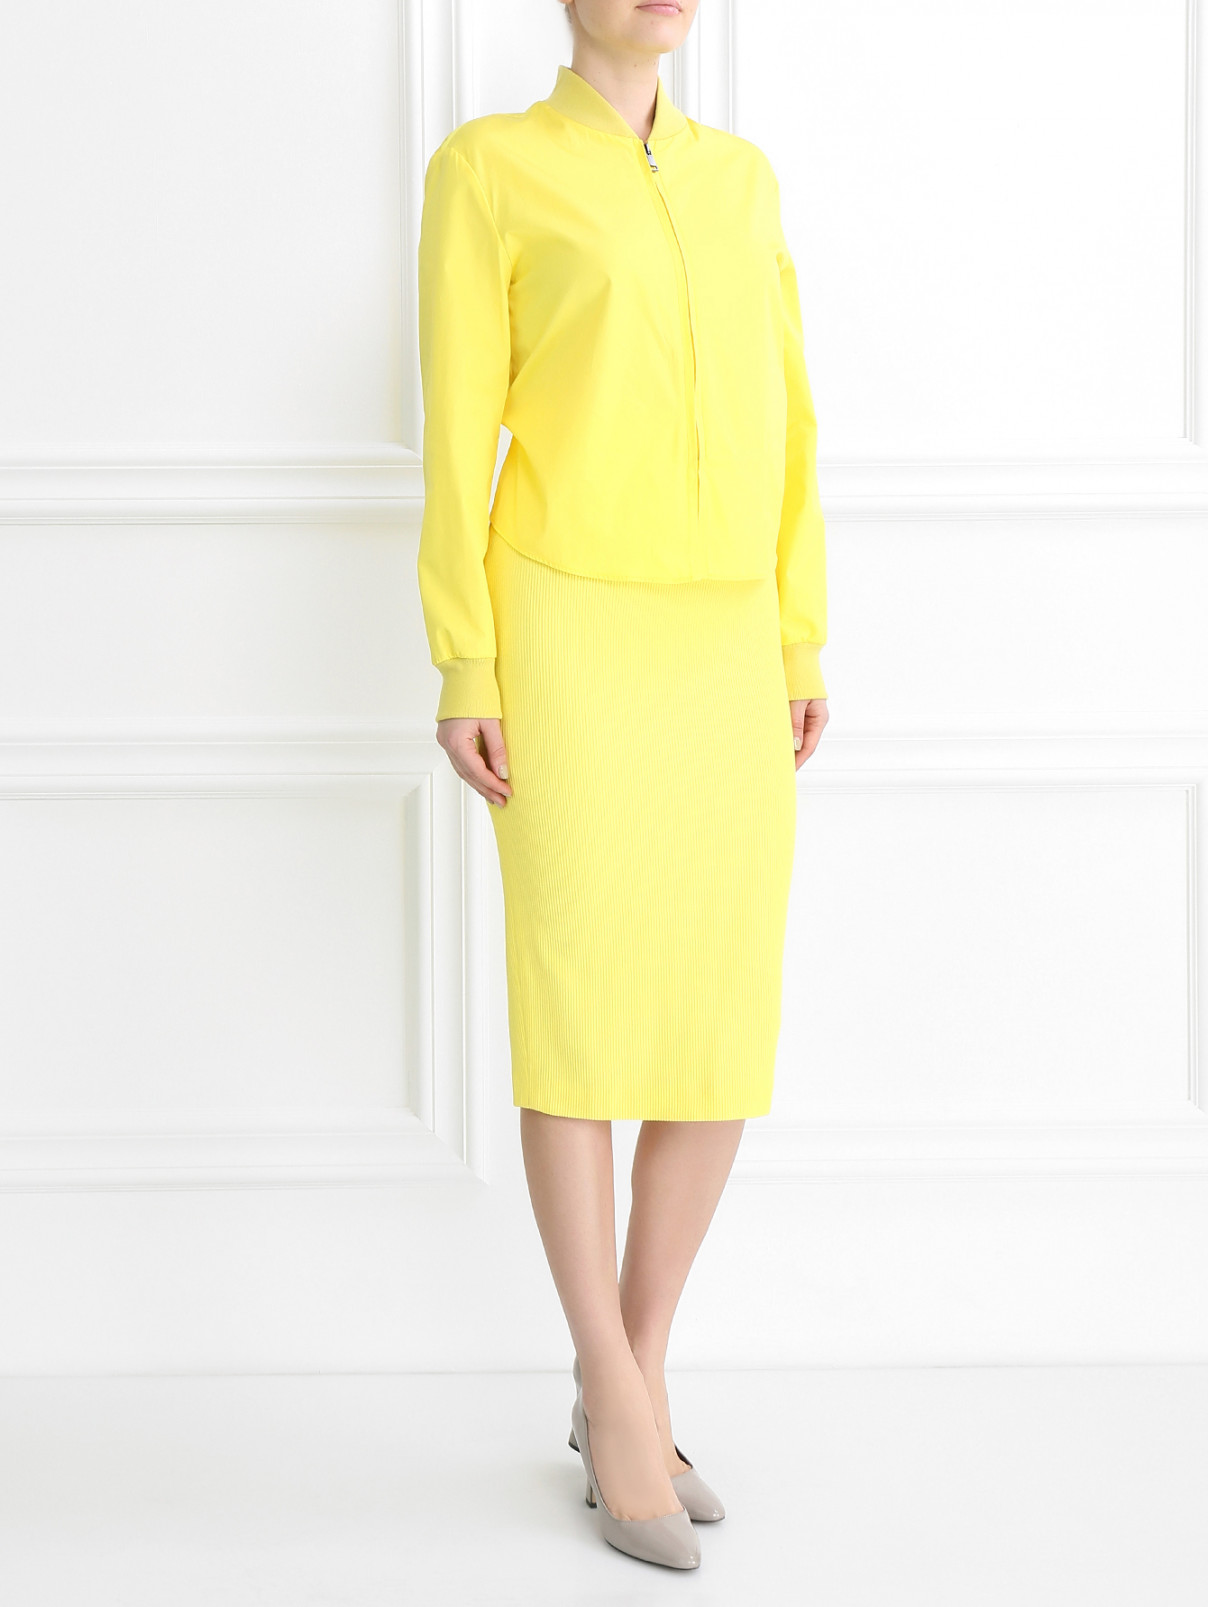 Платье-футляр из хлопка и вискозы Max Mara  –  Модель Общий вид  – Цвет:  Желтый